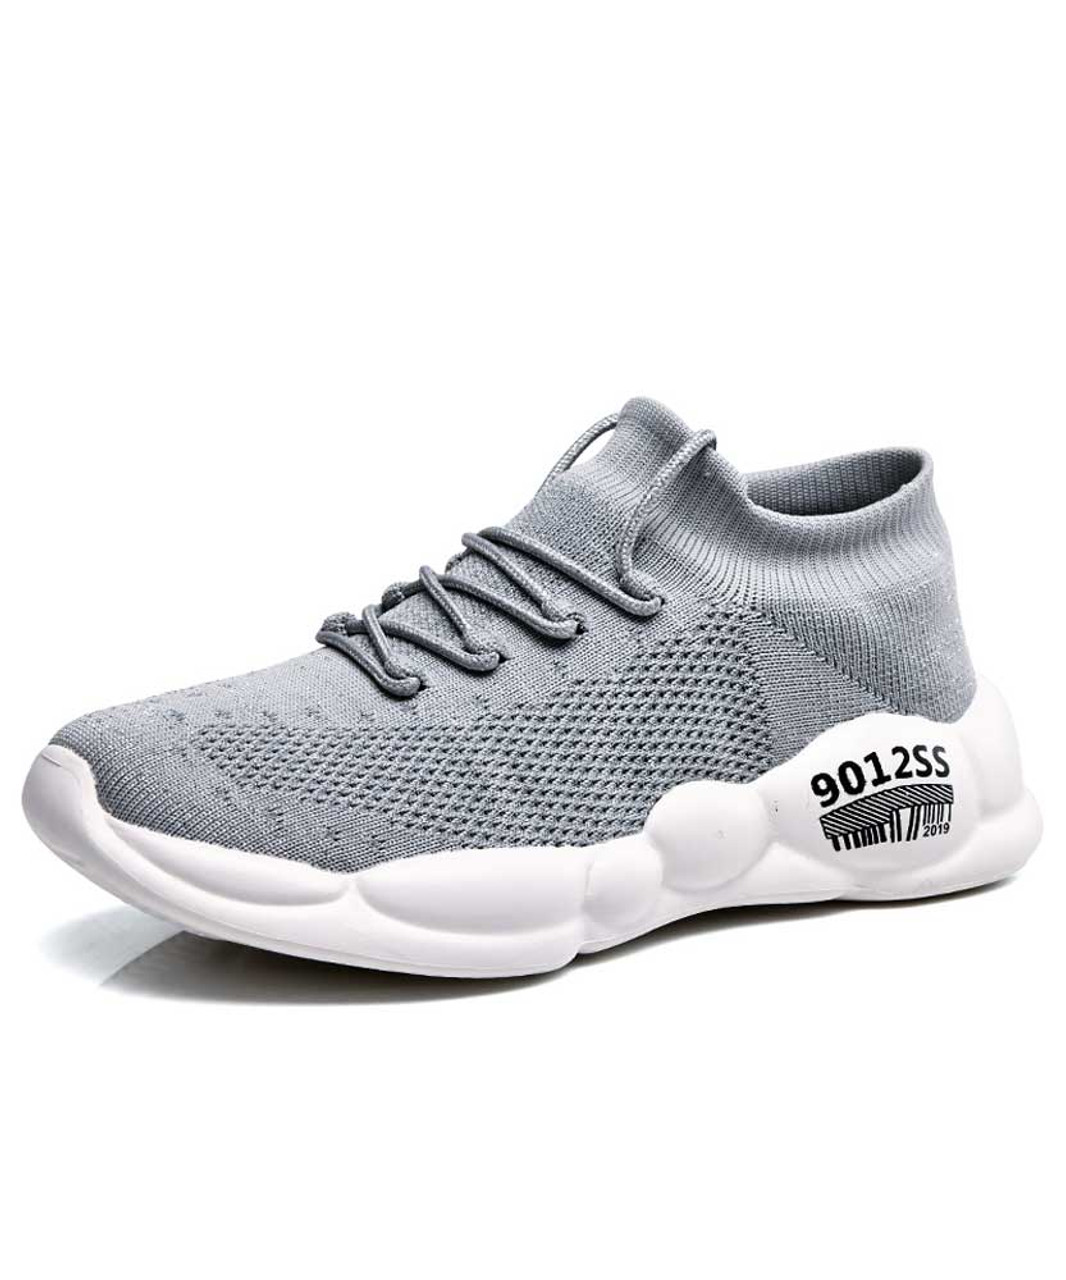 Grey flyknit texture pattern print shoe sneaker | Womens shoe sneakers ...